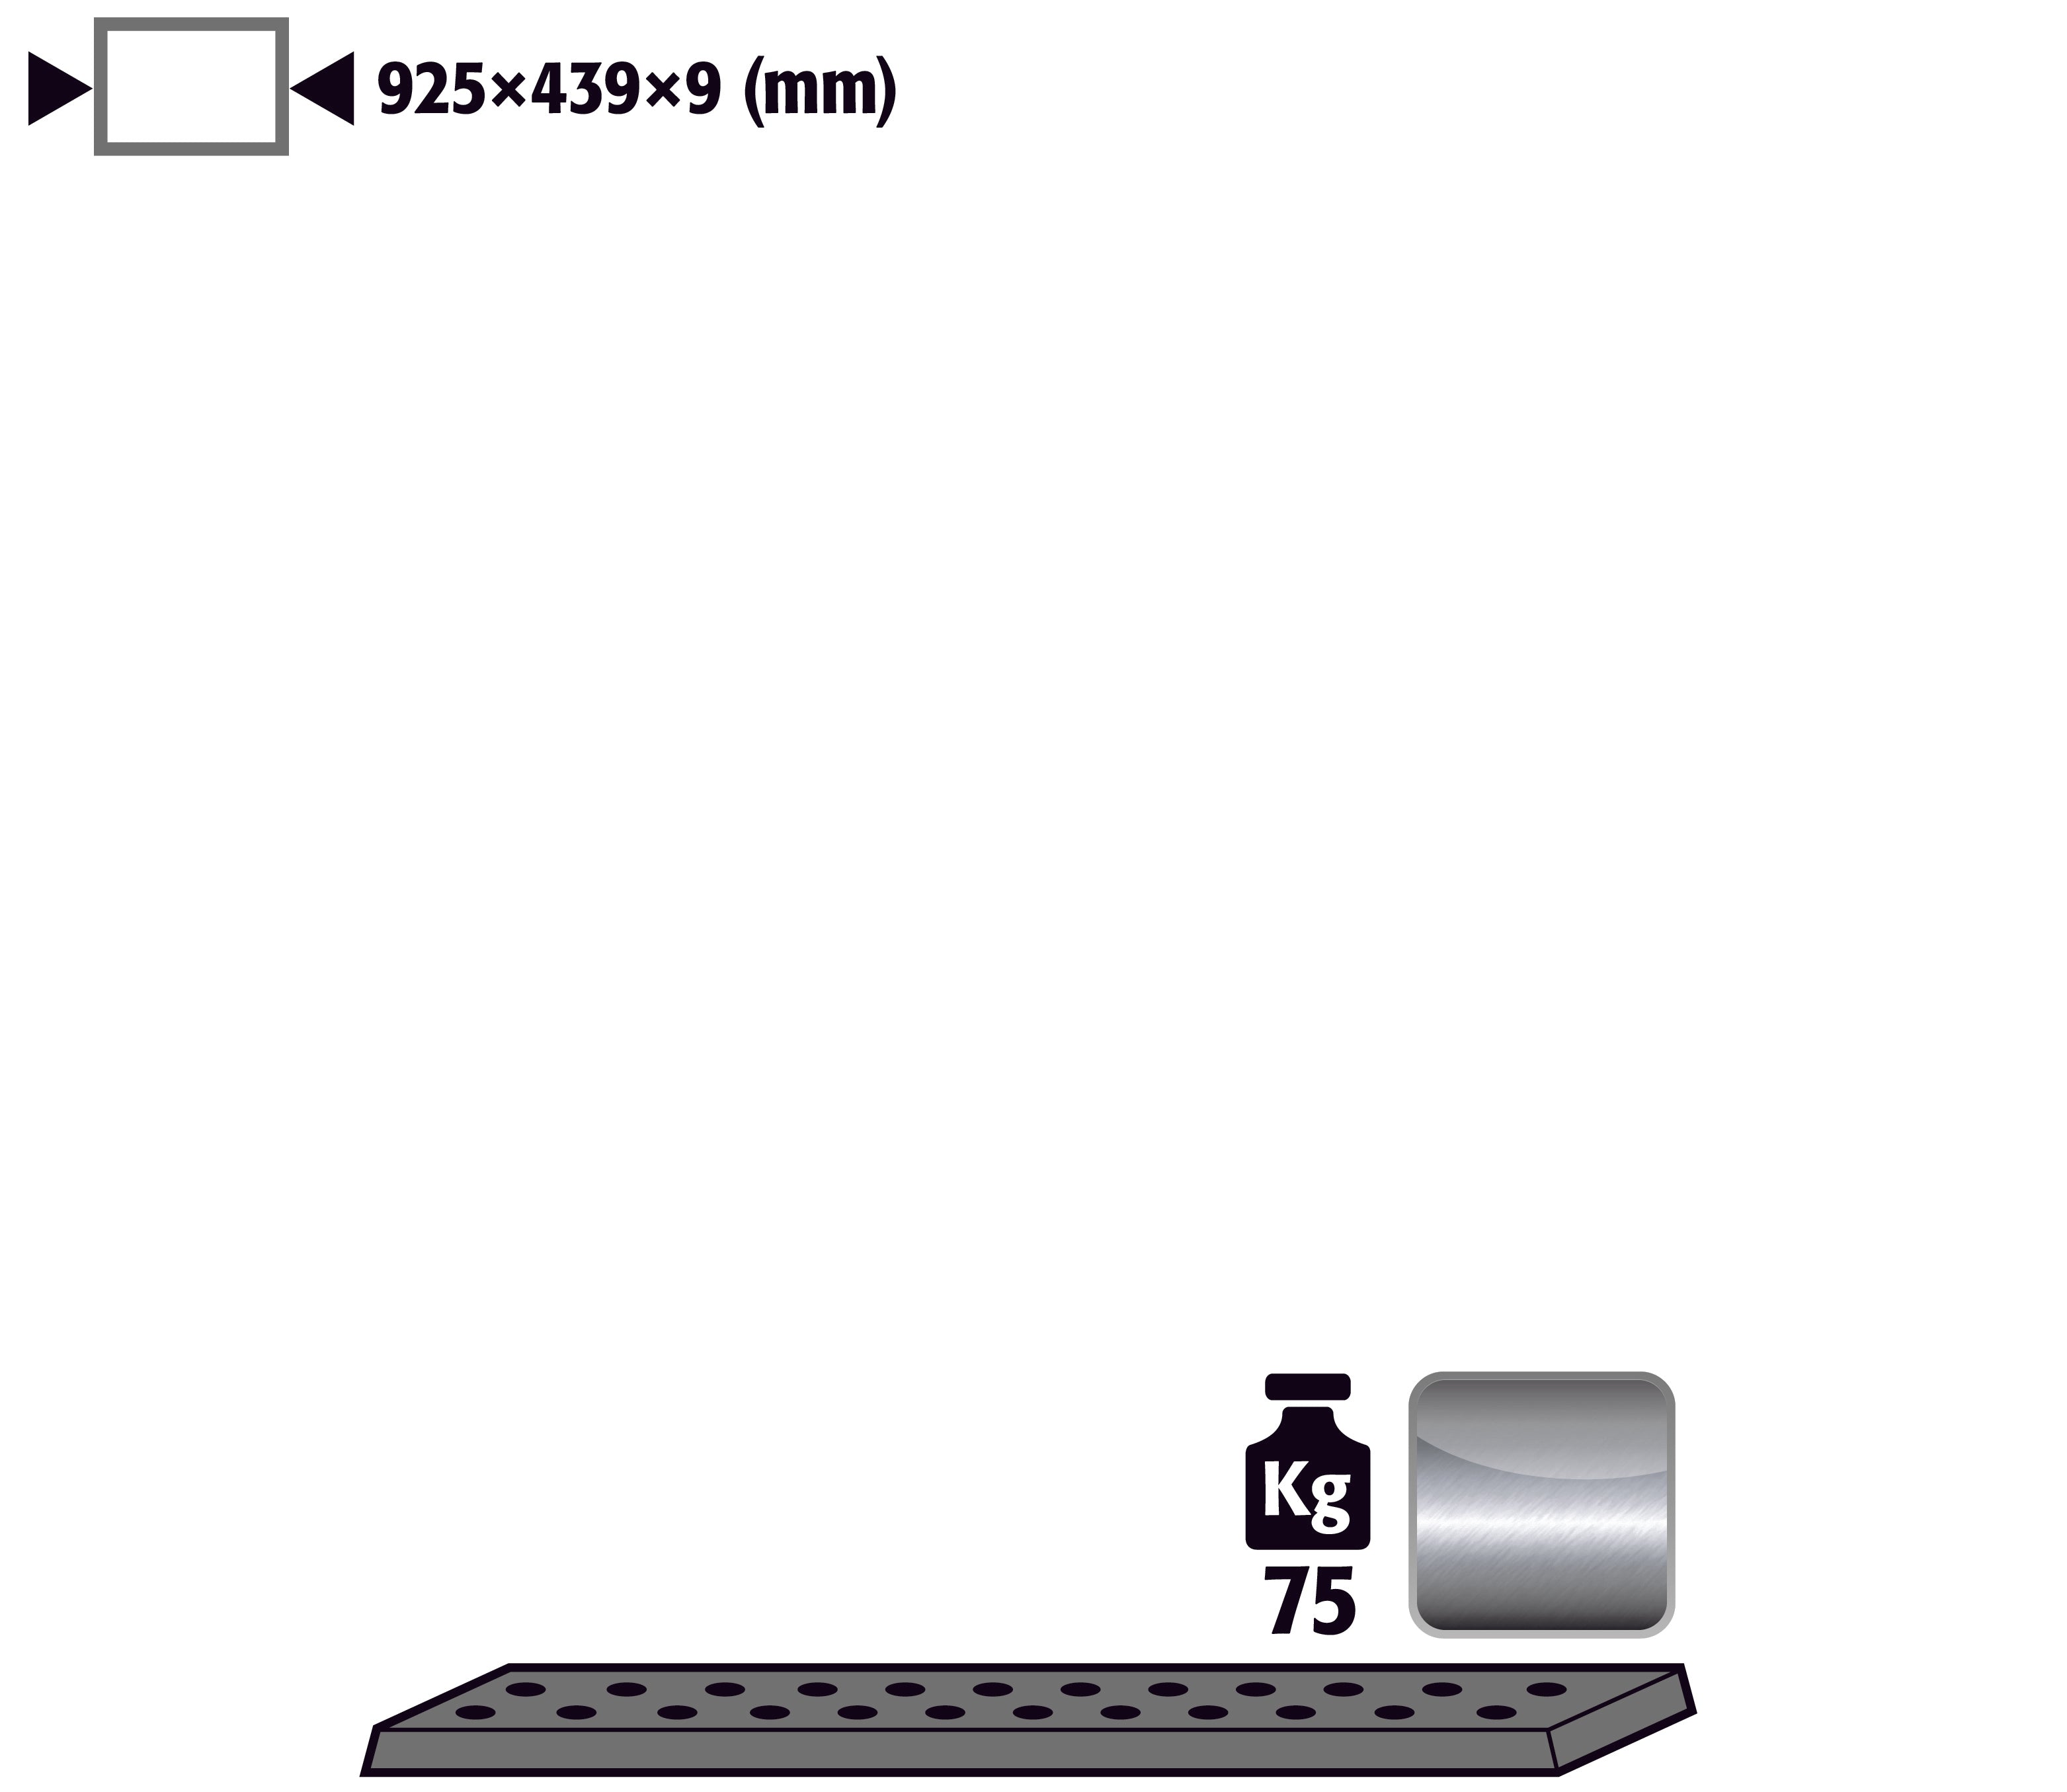 Tôle perforée standard pour modèle(s): UB90, UB30 avec largeur 1100 mm, acier inoxydable 1.4016 brut